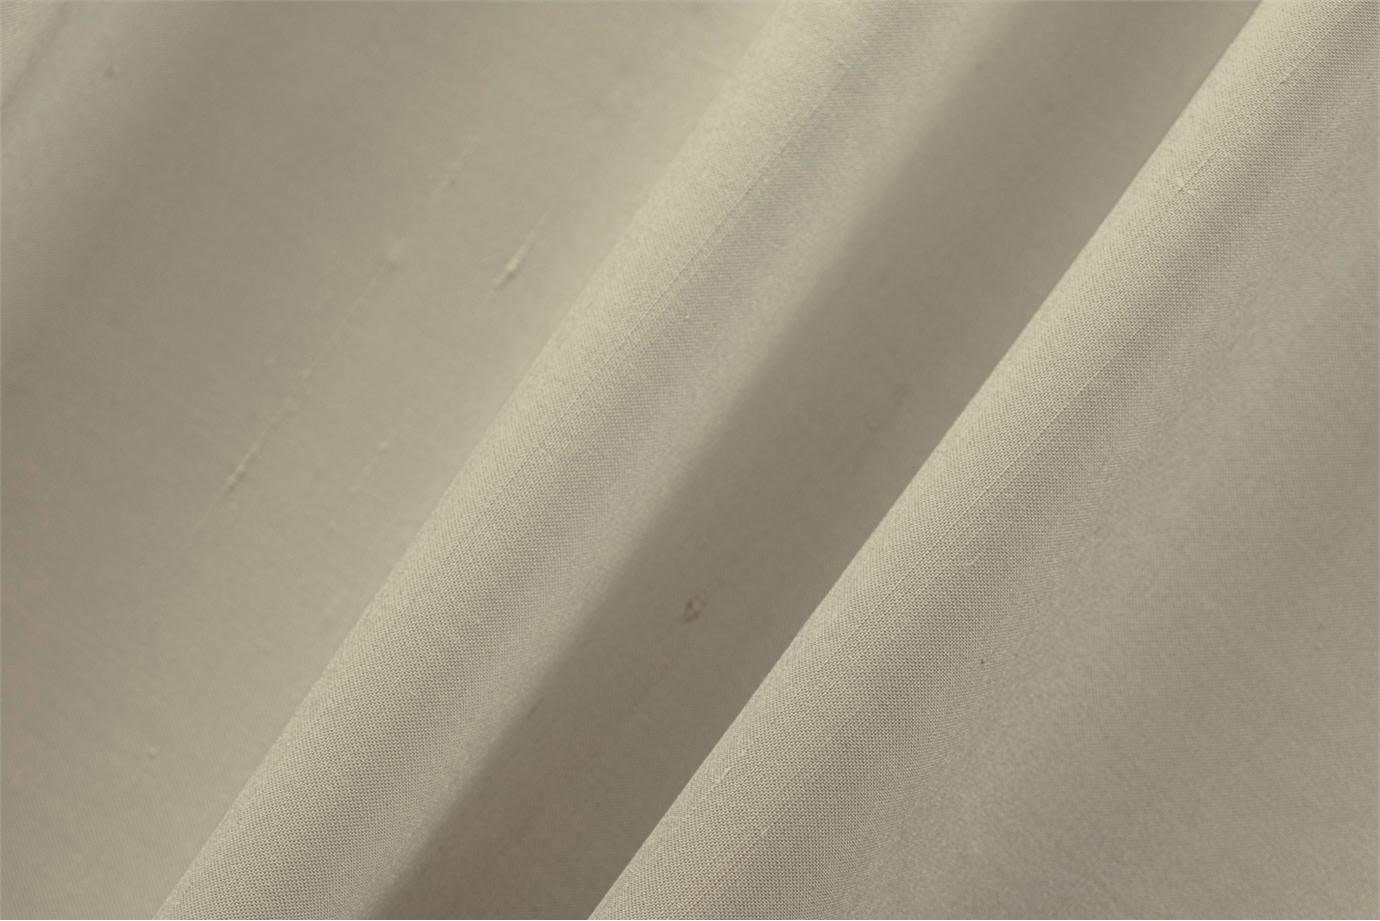 Tissu Couture Double Shantung Beige sable en Coton, Soie UN001024